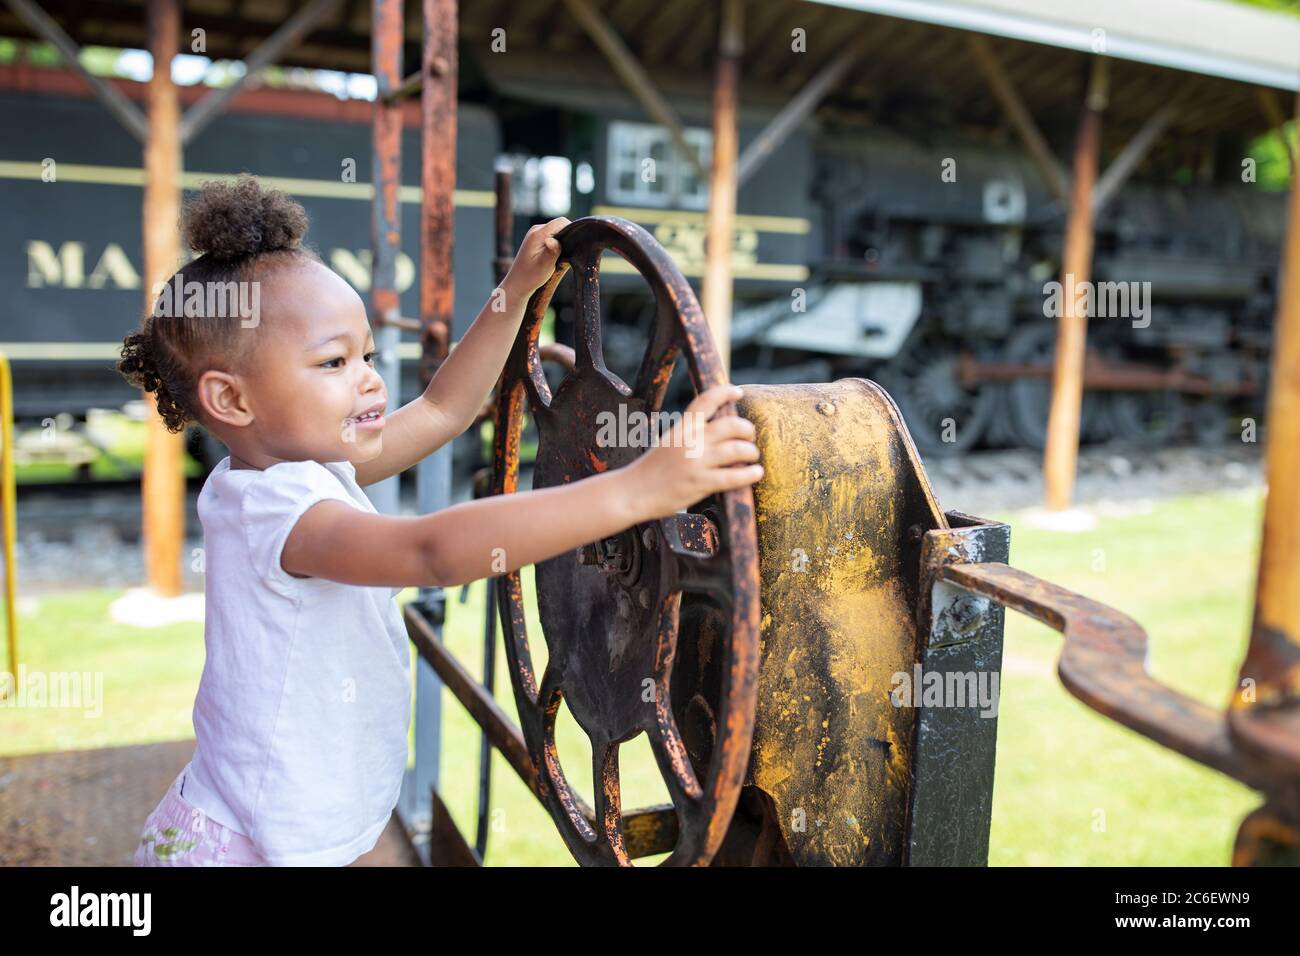 Une jeune fille joue sur une voiture de train à Hagerstown, MD, USA. Banque D'Images